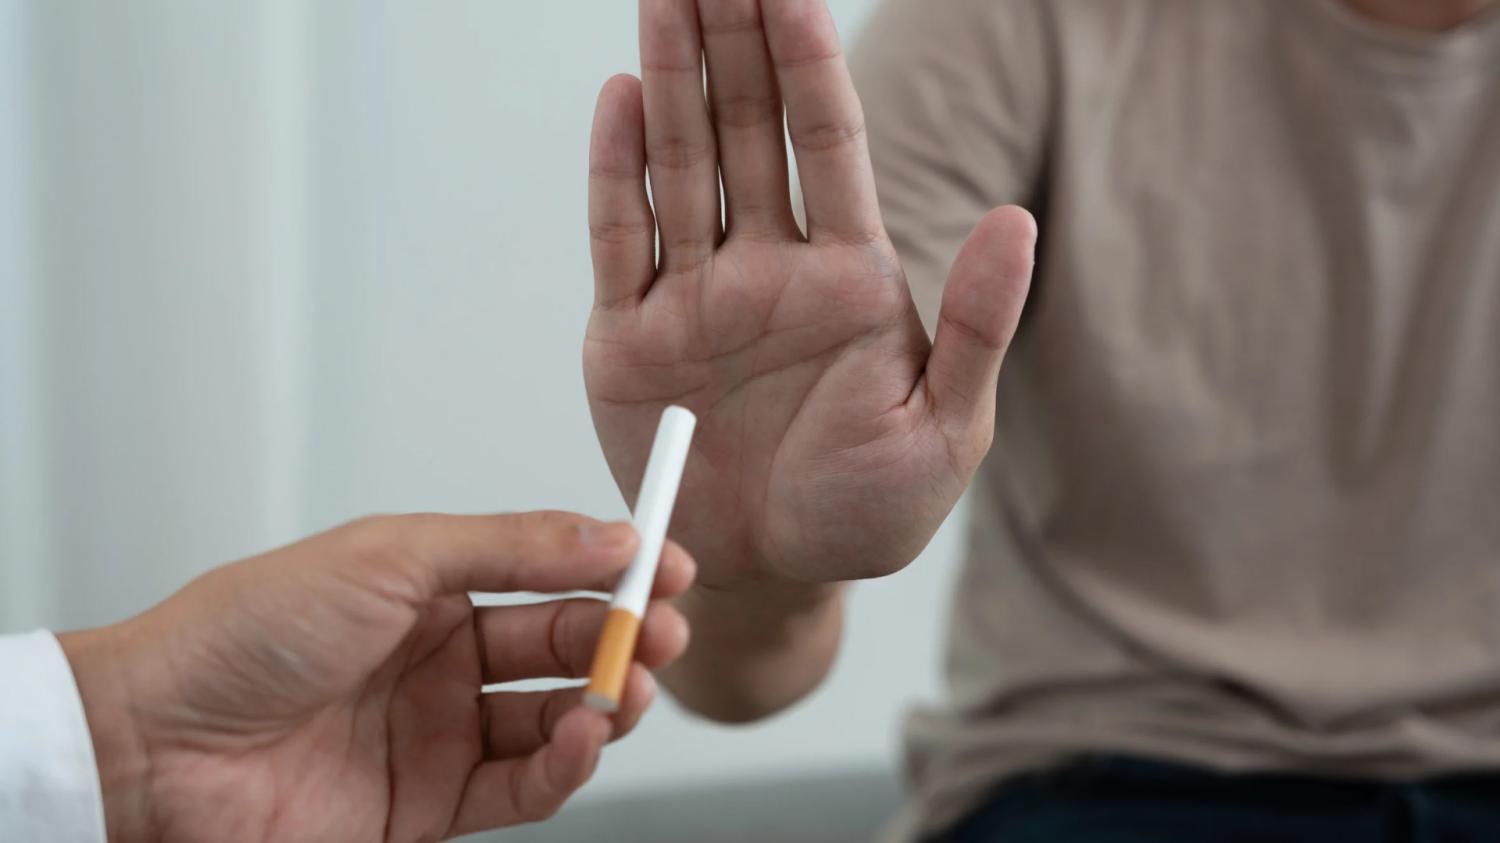 Эндокринолог объяснила, почему набирается лишний вес после отказа от сигарет